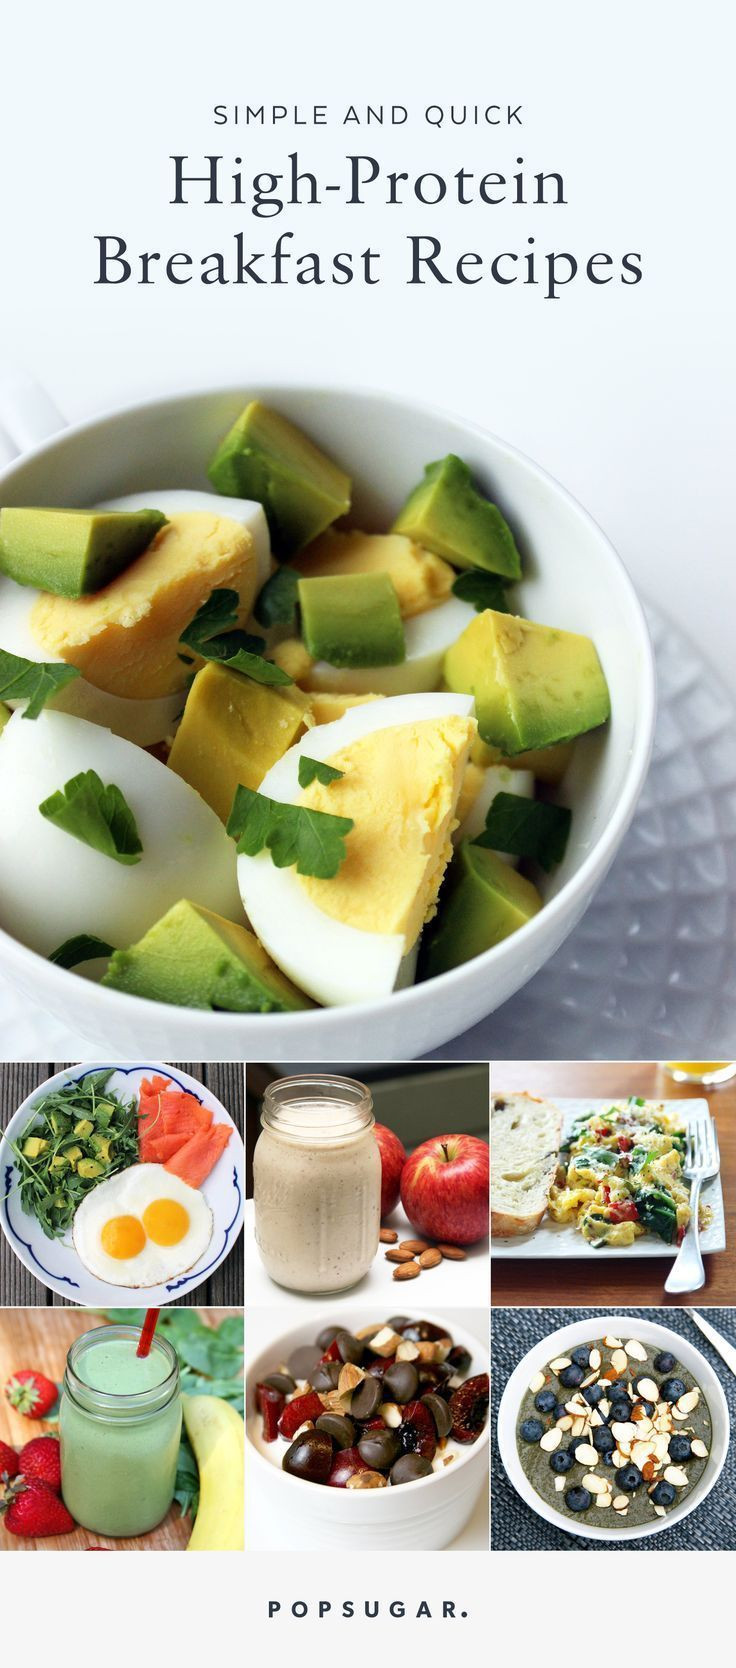 Healthy Breakfast Pinterest
 Best 25 Healthy breakfasts ideas on Pinterest